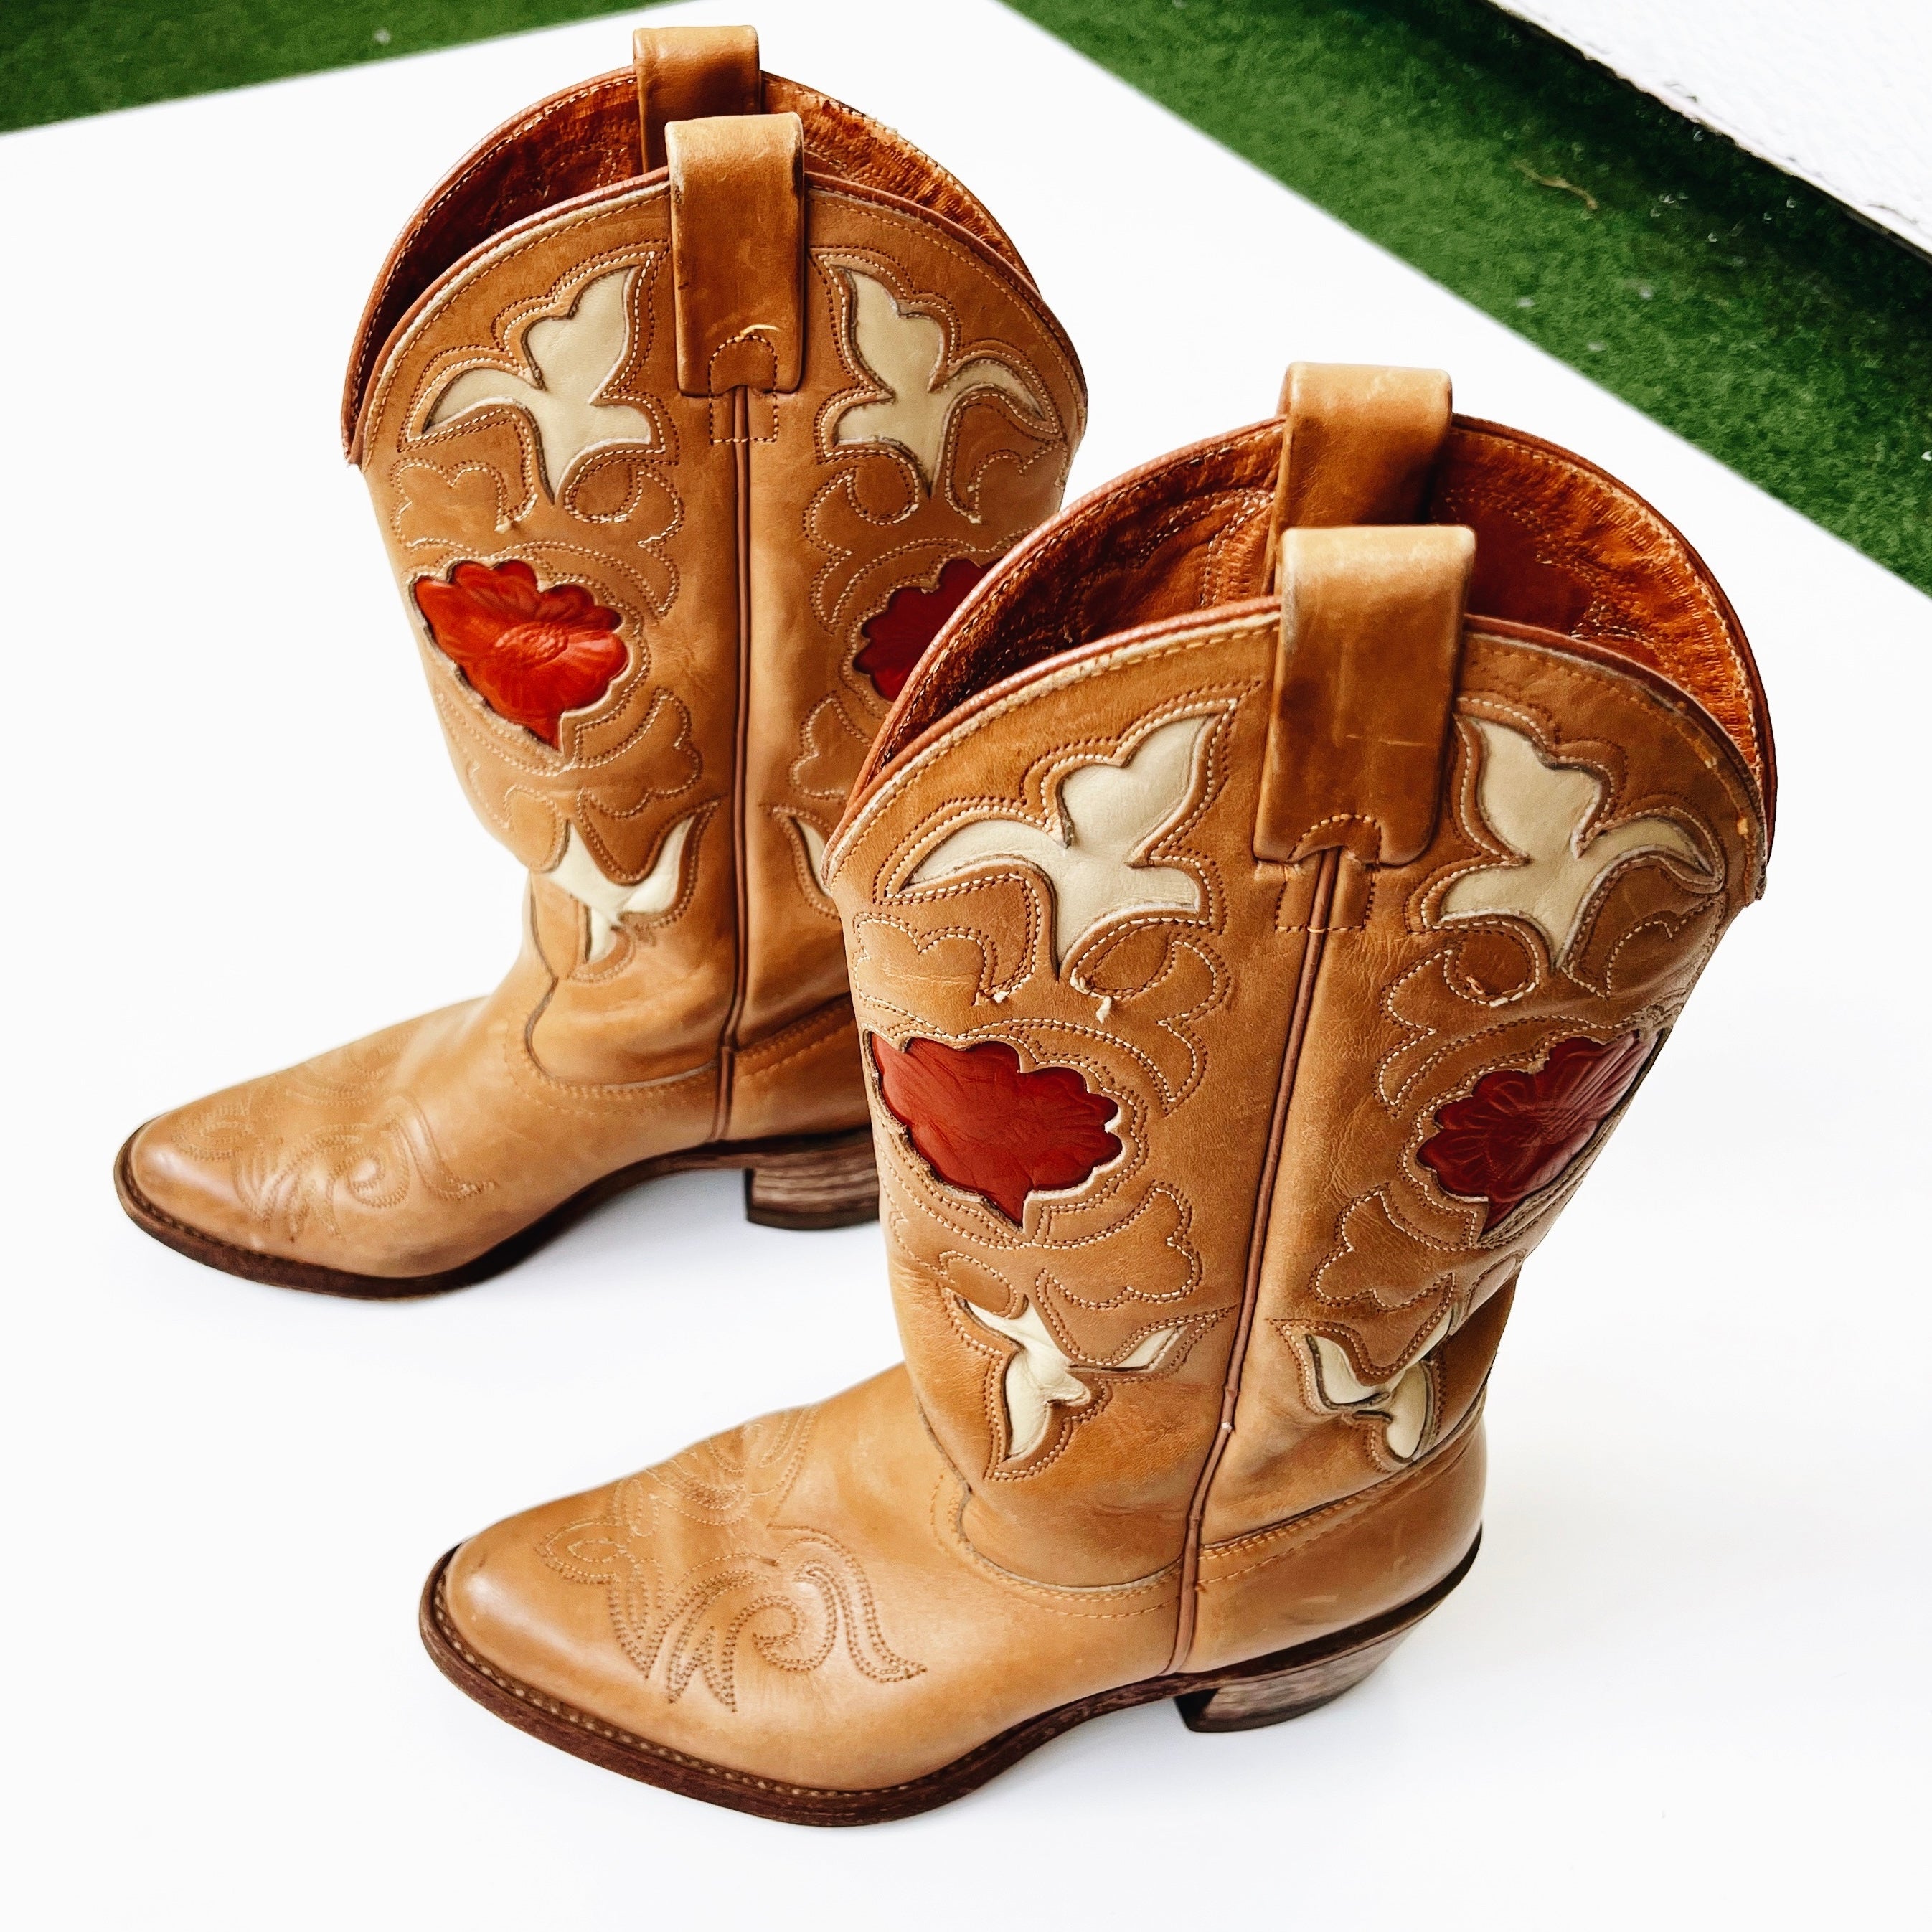 Authentic Vintage Leather Cowboy Boots (6.5)